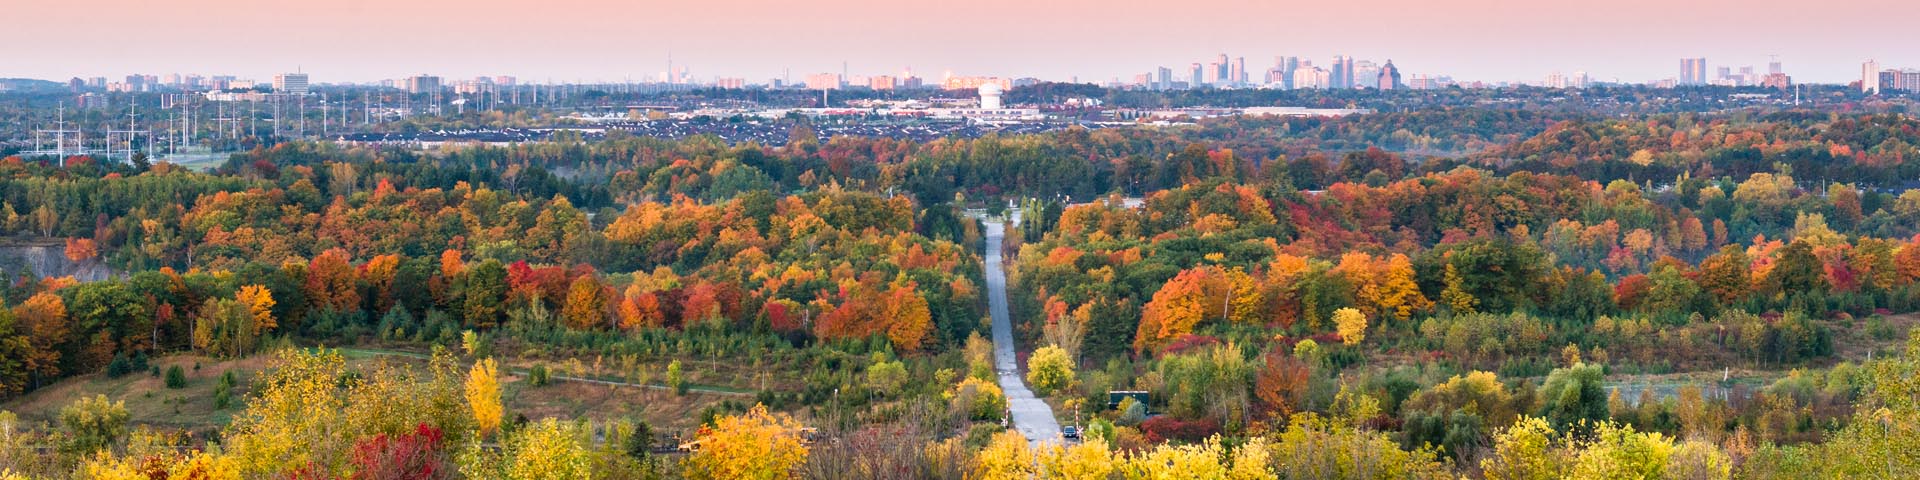 Photo de paysage du parc urbain national de la Rouge à l’automne, les arbres arborant des teintes de jaune, d’orange et de rouge. Au loin, on aperçoit le panorama de la ville de Toronto avec ses grands immeubles. Le ciel rose, avec des pointes de jaune du lever de soleil, est légèrement voilé.